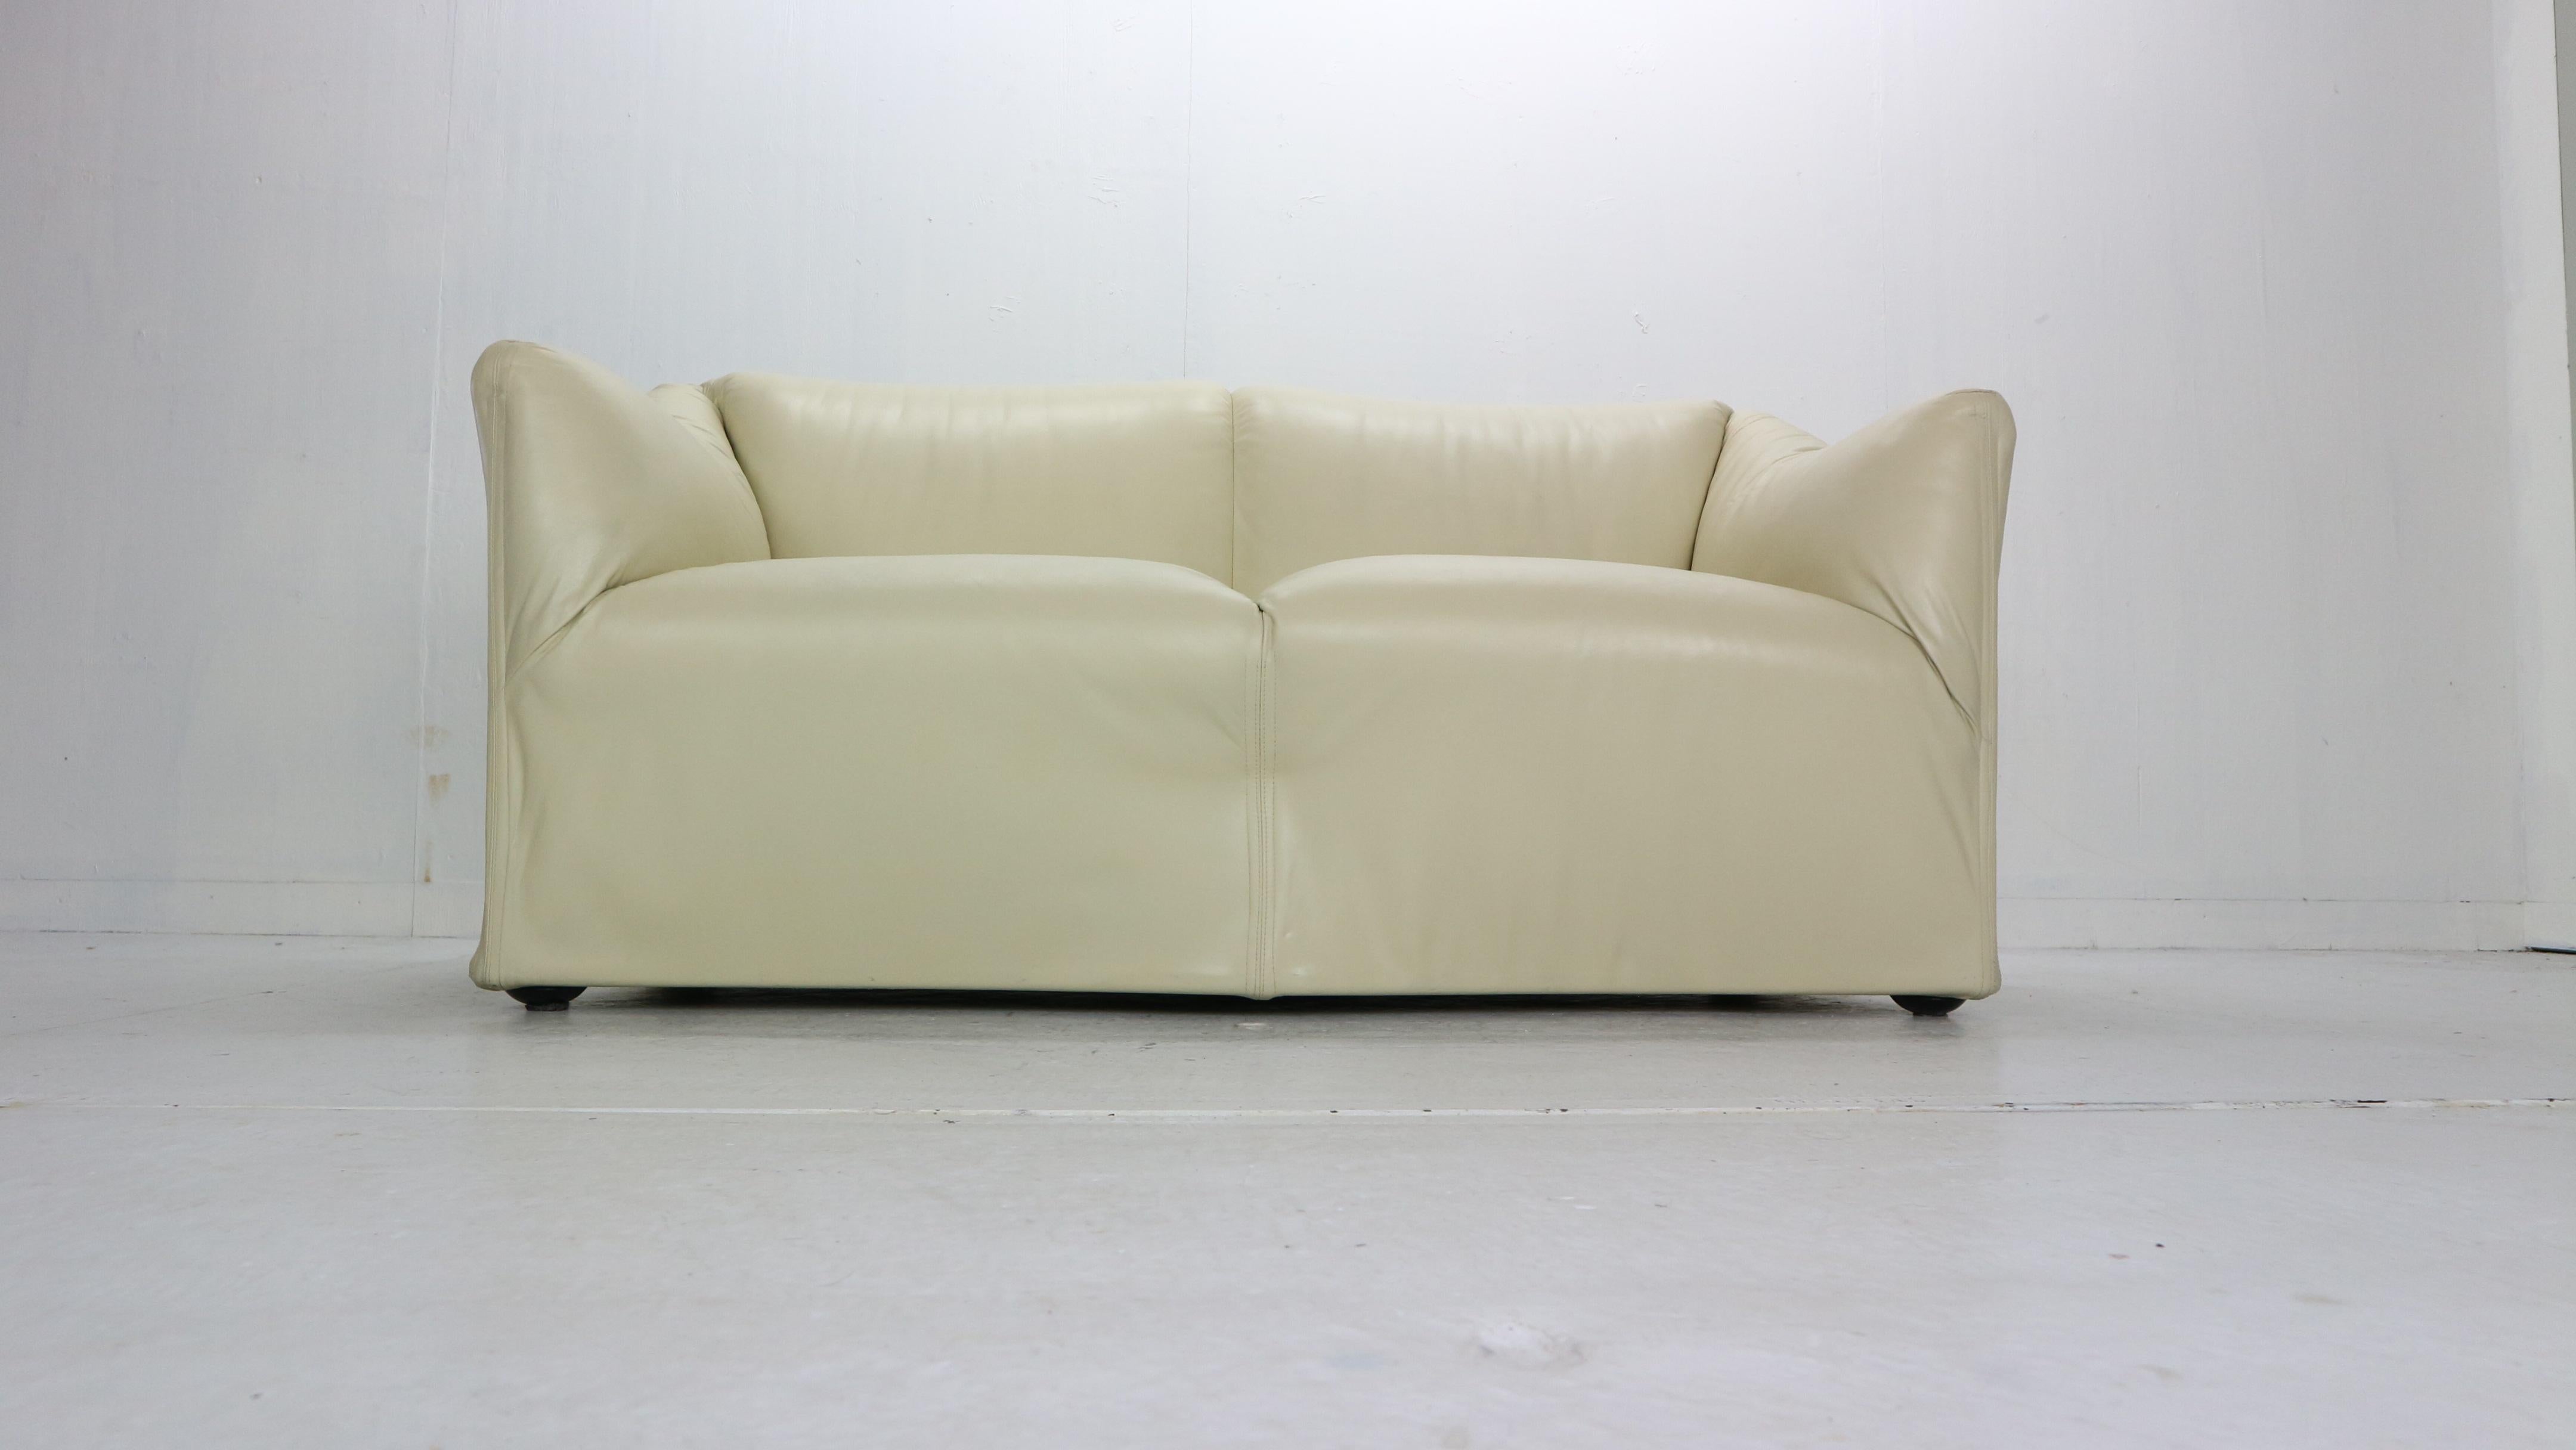 Diese Lounge Zweisitzer-Sofa oder Loveseat entworfen von Mario Bellini für Cassina Herstellung in den 1970er Jahren, Italien.
Modell Nr.: 685,
Cremefarbene Original-Lederpolsterung, Stahlrahmenkonstruktion auf Rollen.

Tentazione bedeutet